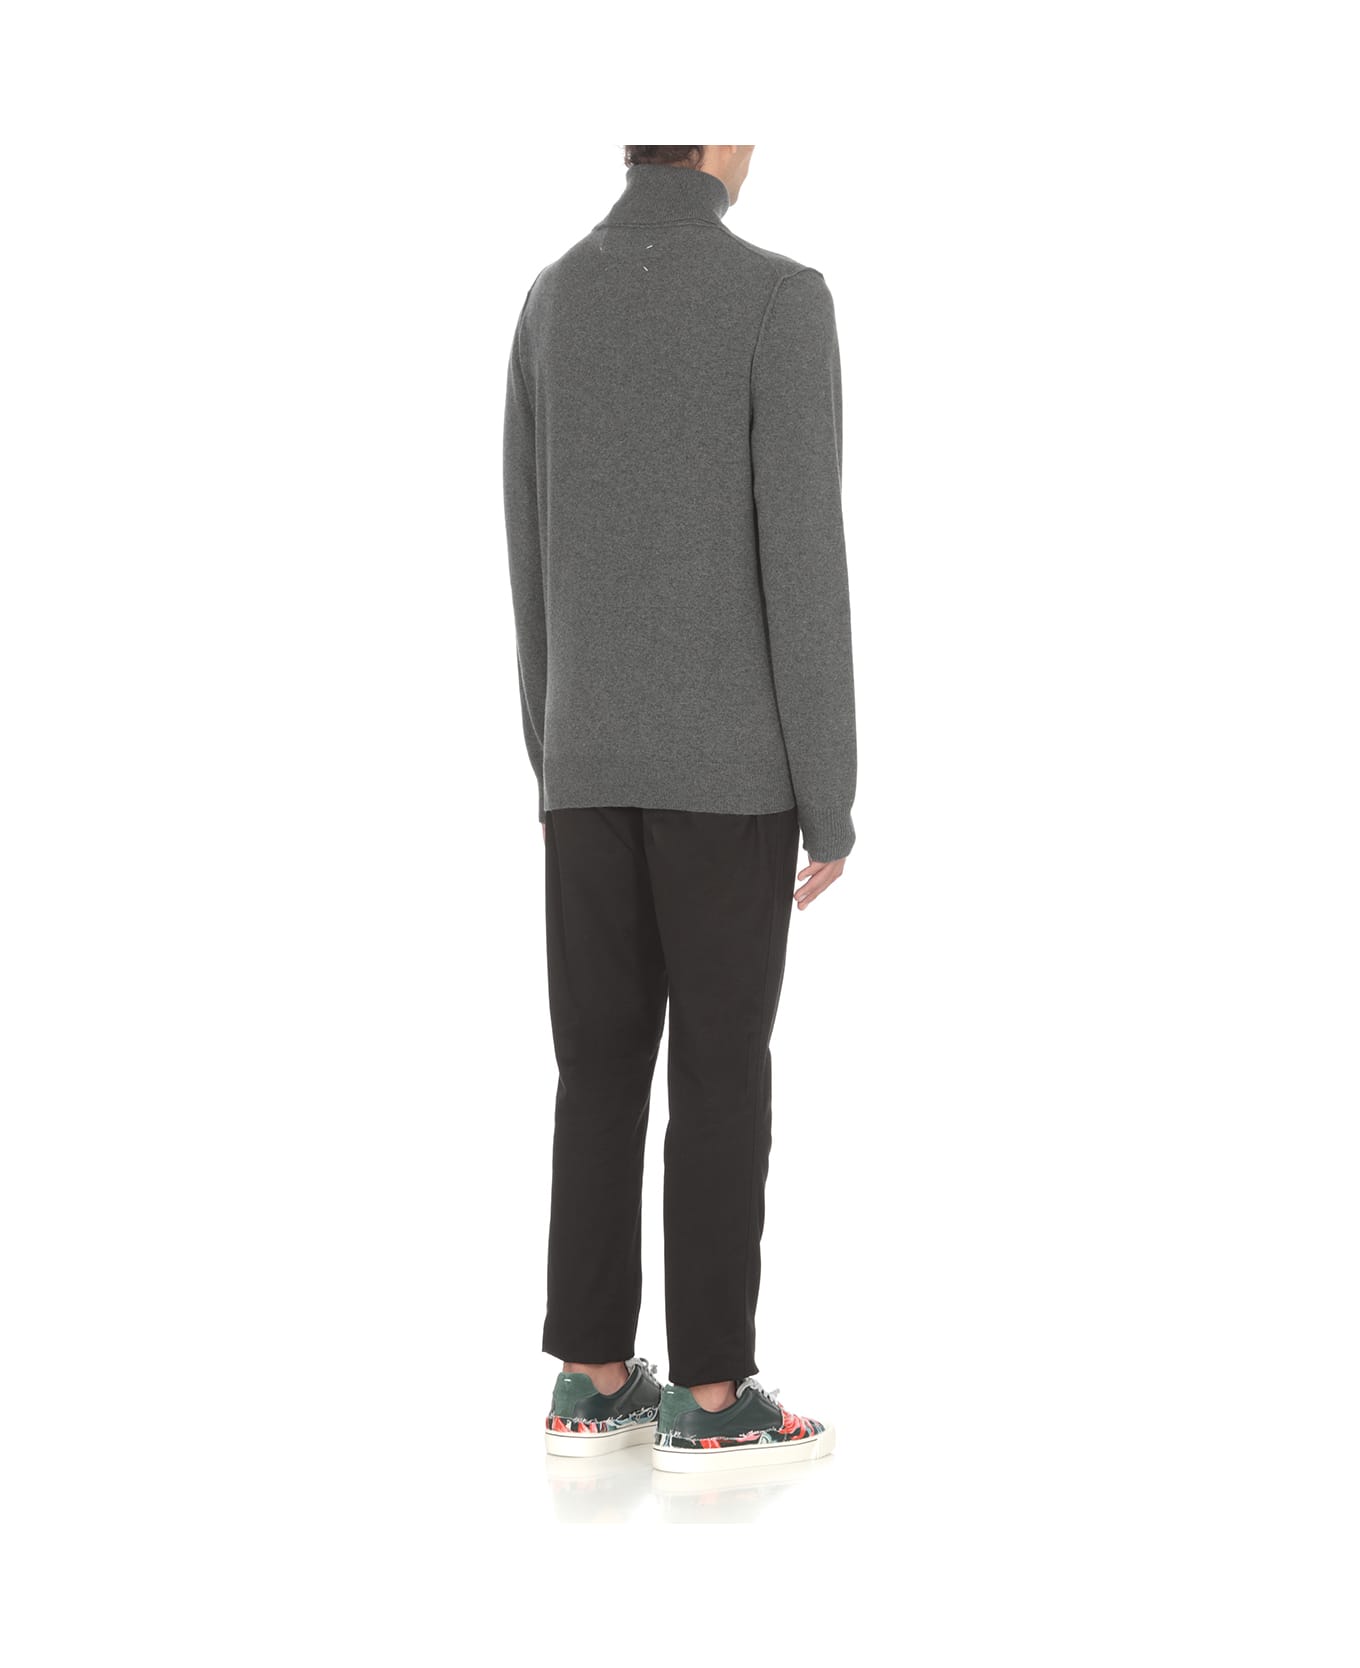 Maison Margiela Sweater - Grey ニットウェア